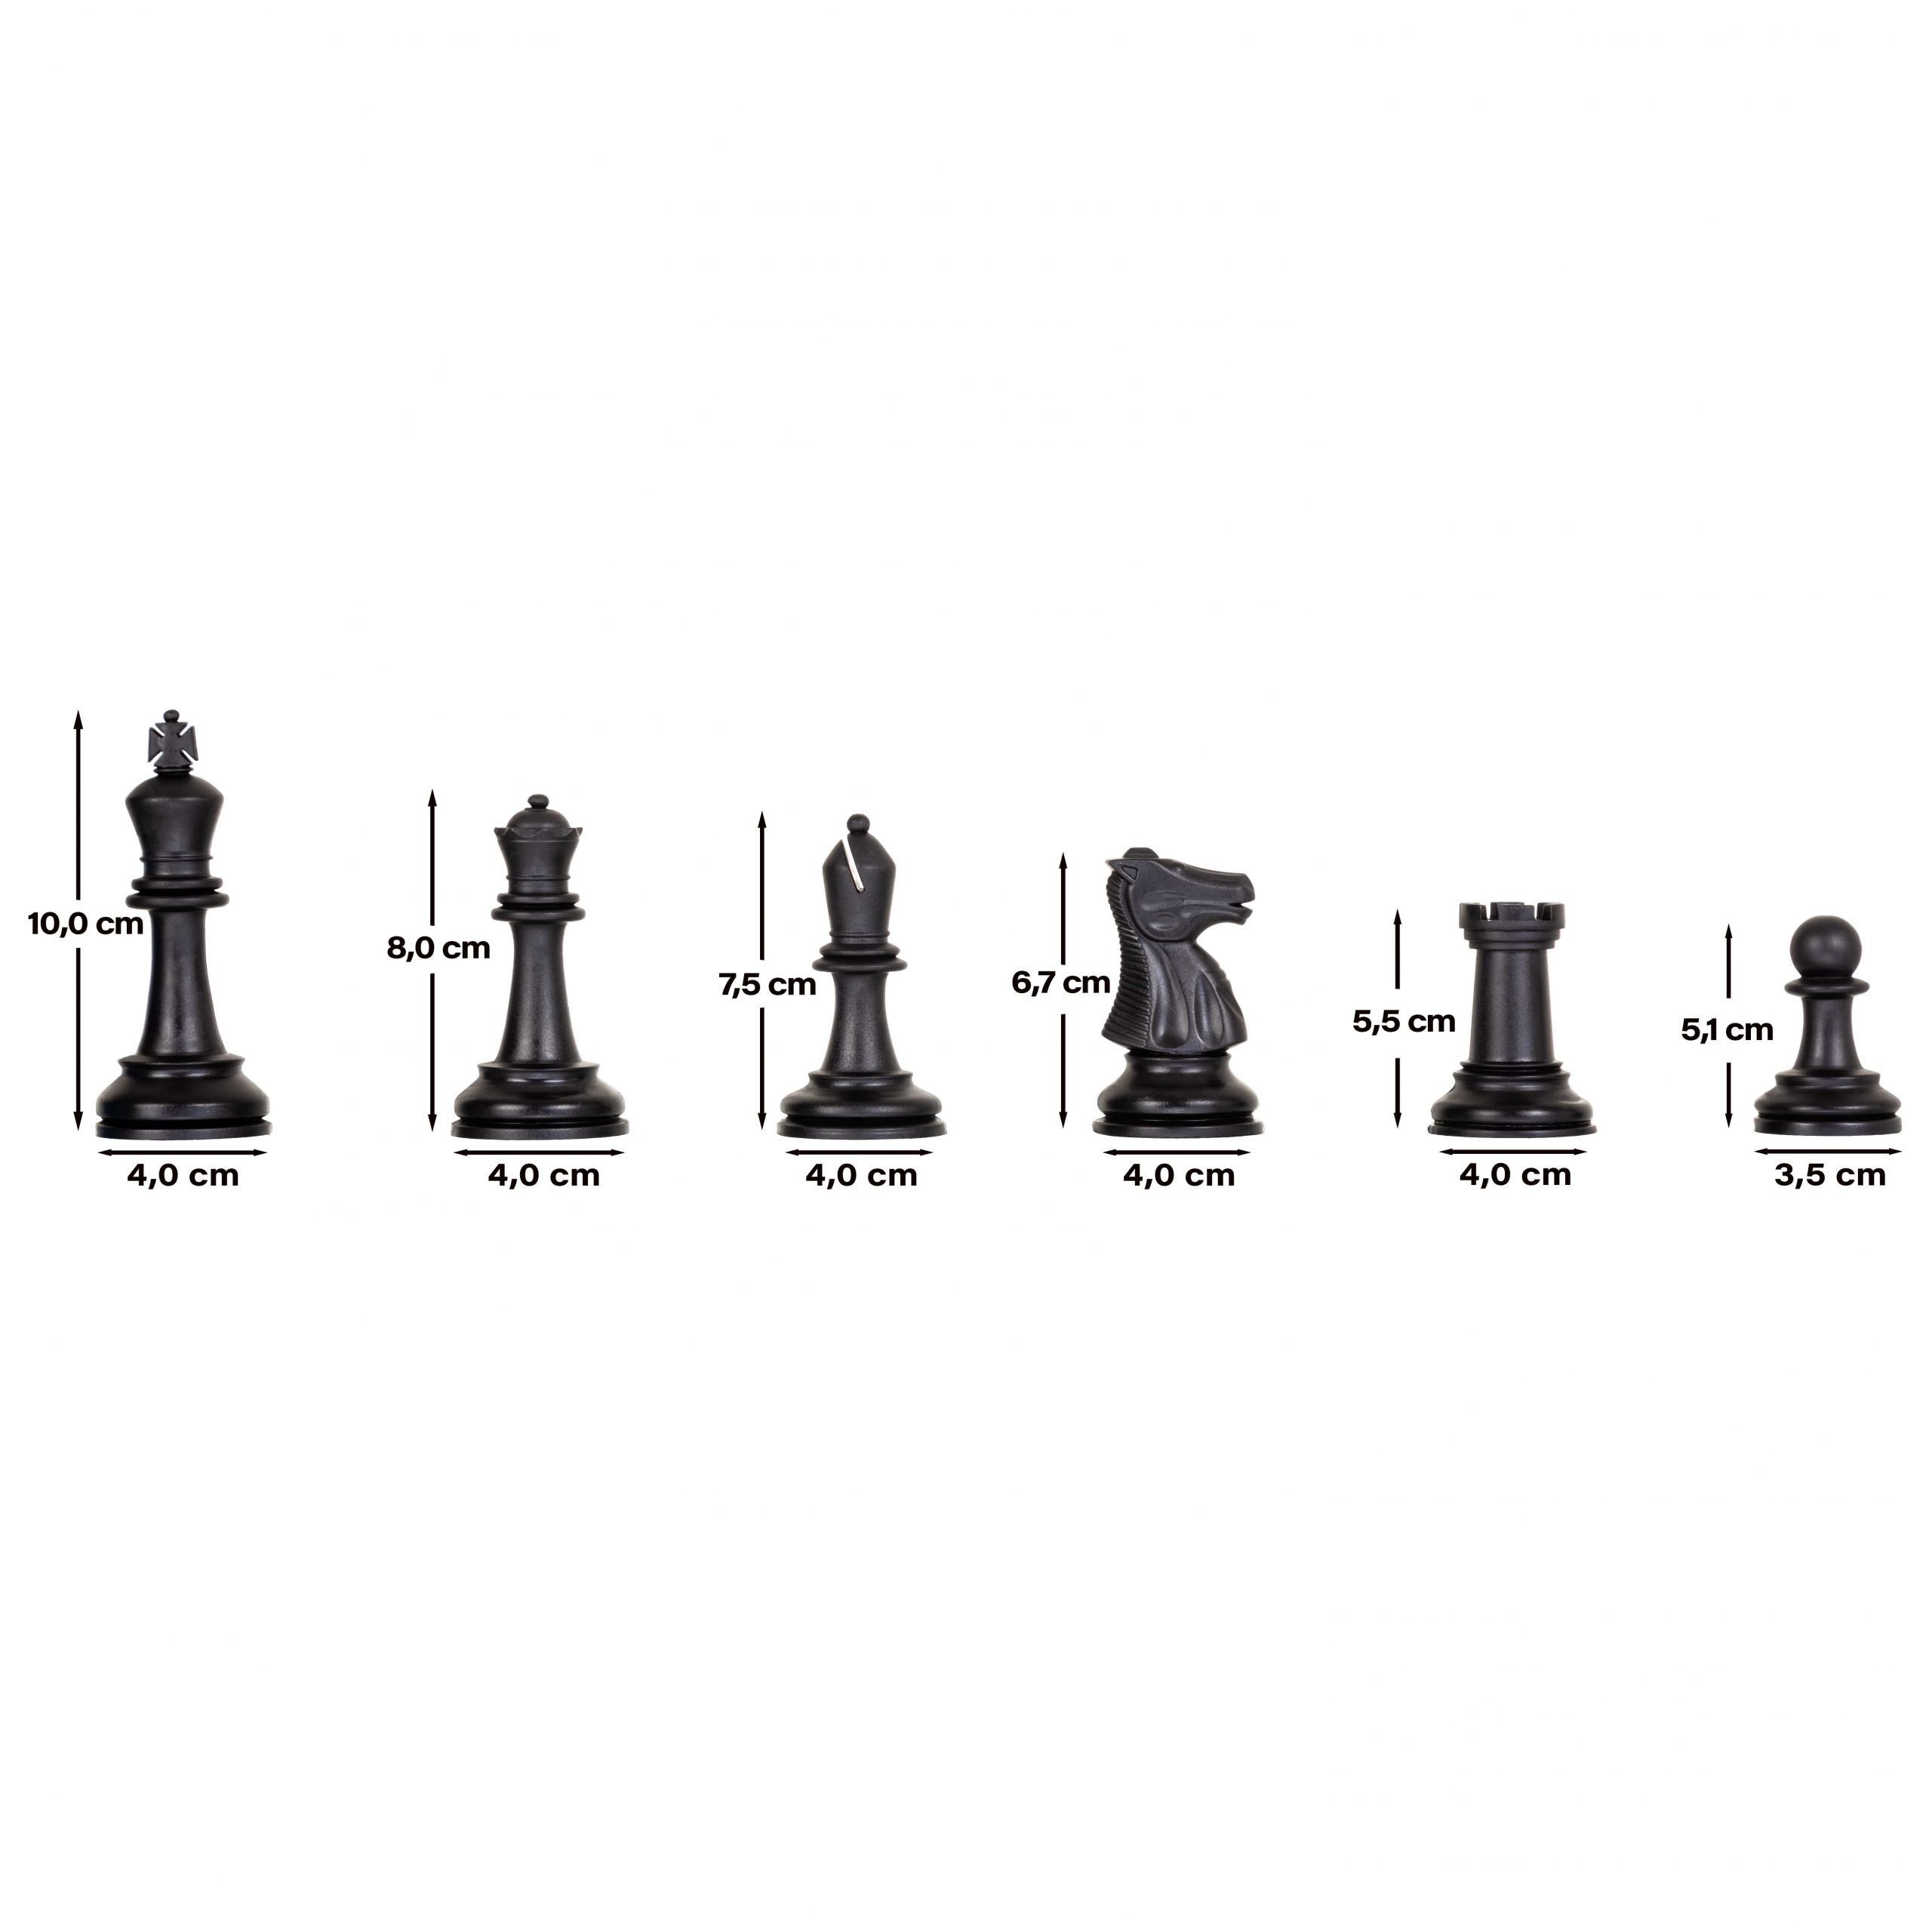 Curso de Xadrez! 13 CURSOS em 1 [DOMINE O JOGO] + 19 EXTRAS! 